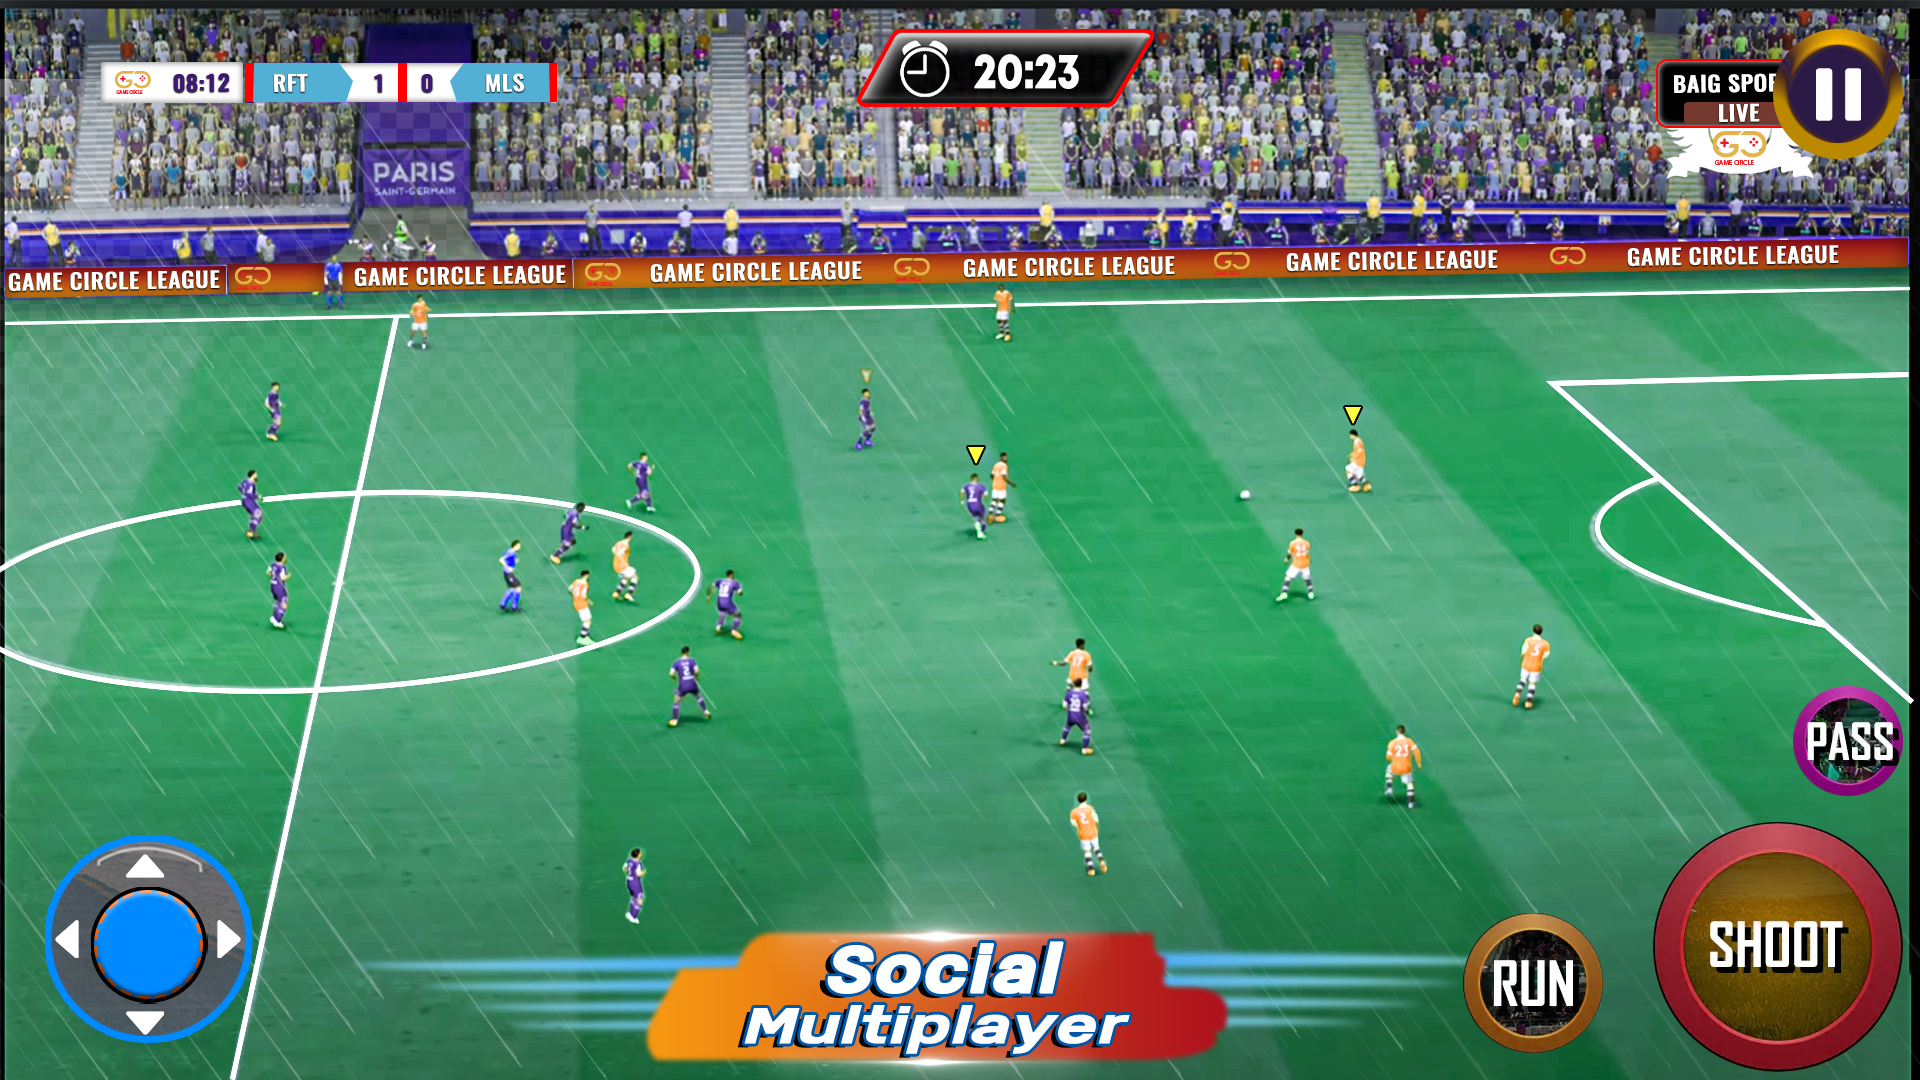 Total Football llega a Android e iOS: un juego de fútbol que